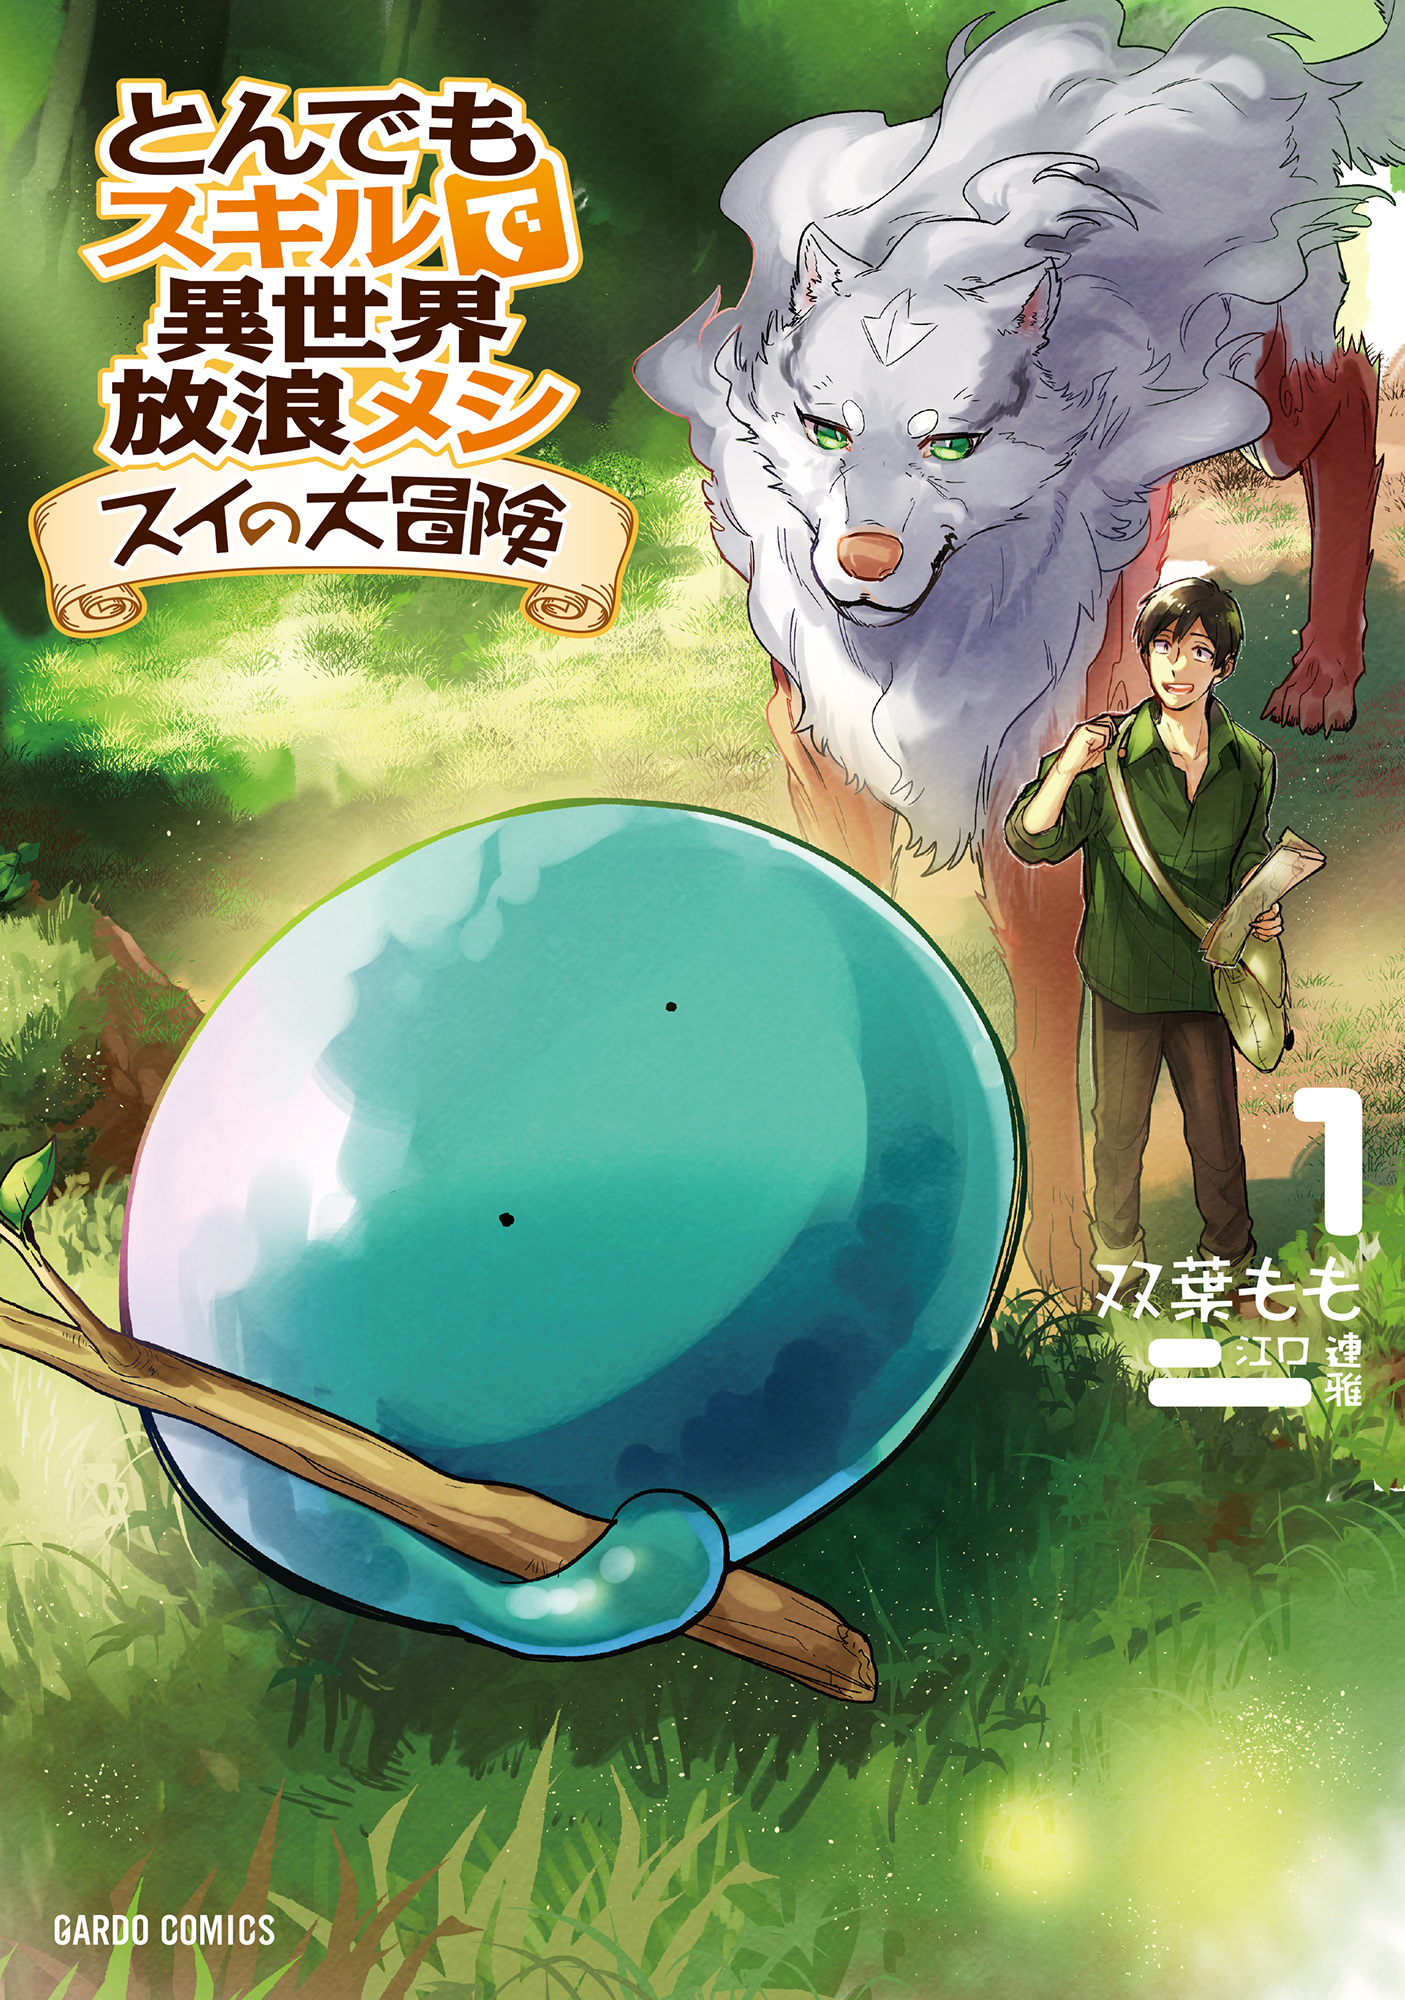 Art] Tondemo Skill de Isekai Hourou Meshi - Volume 5 Cover : r/manga